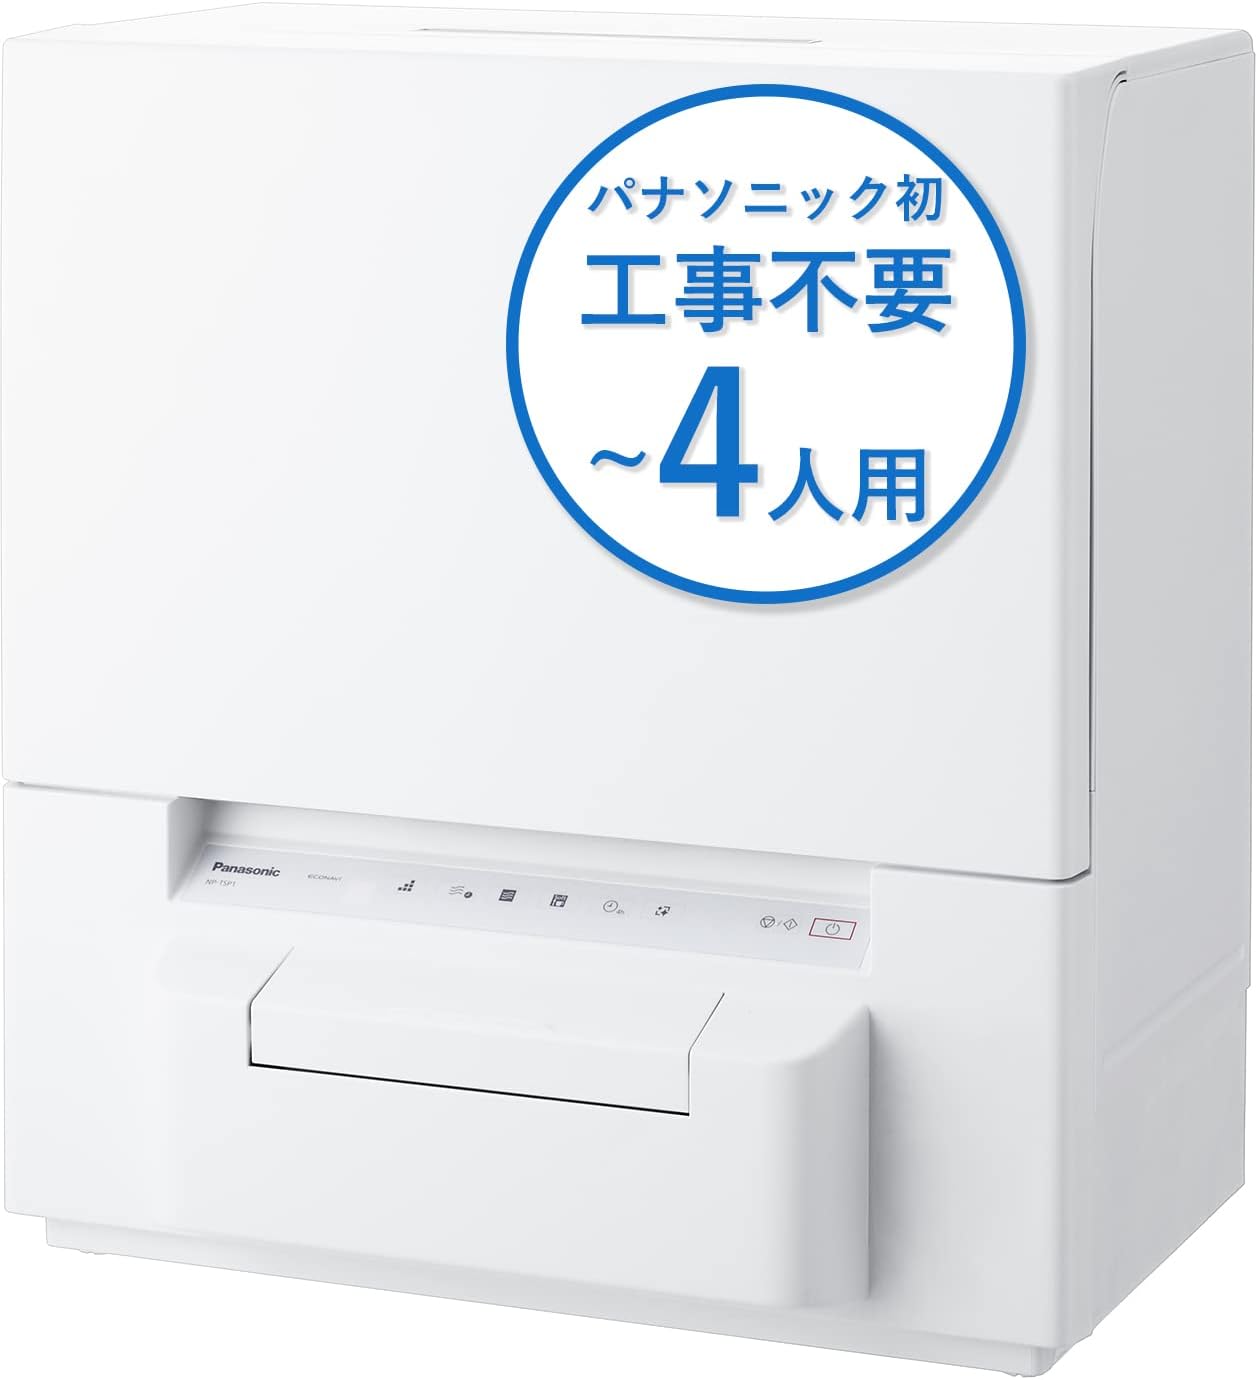 NP-TSP1-W 食器洗い乾燥機(タンク式)(ホワイト) Panasonicのことなら